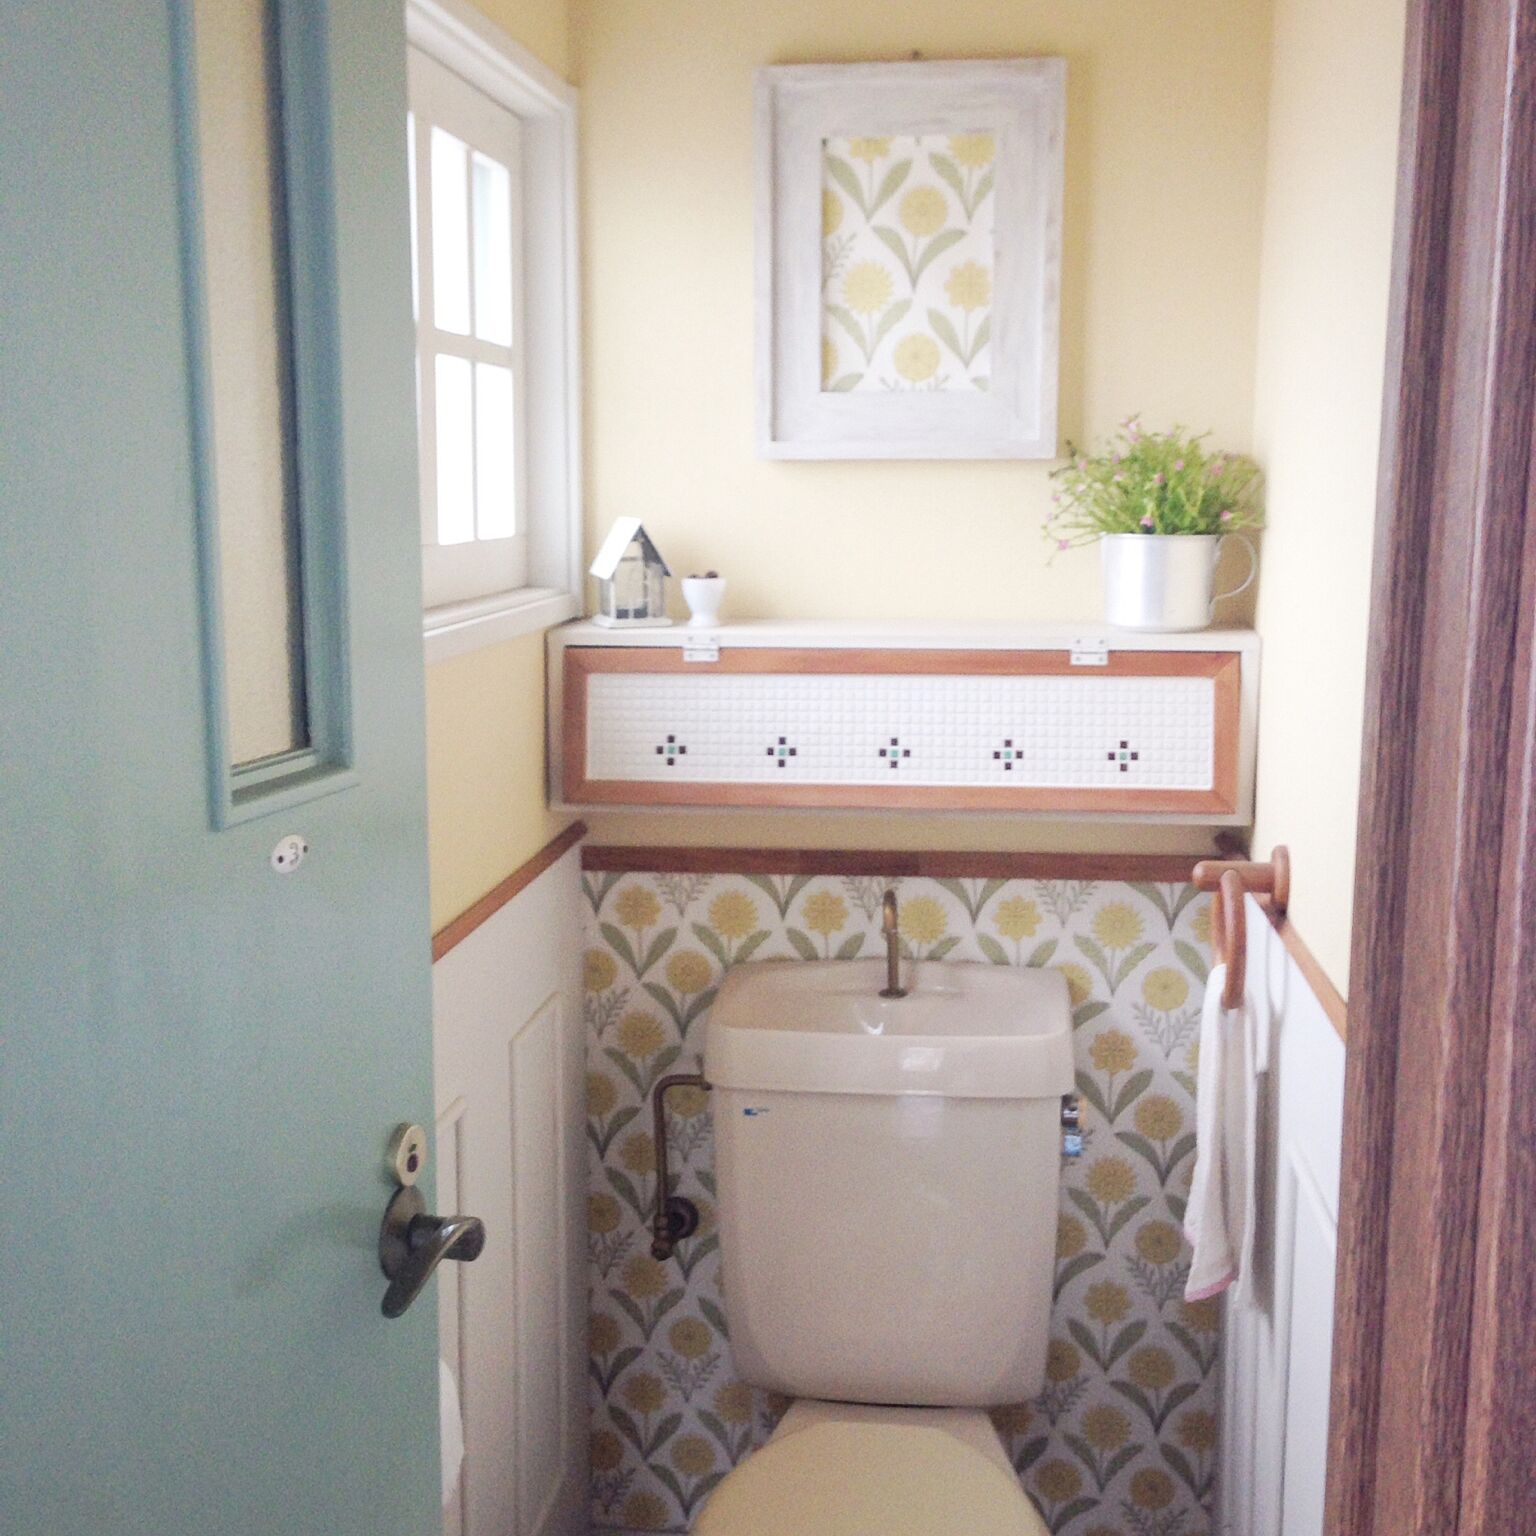 もっと心地よい空間に 壁をつかってトイレをリメイク Roomclip Mag 暮らしとインテリアのwebマガジン